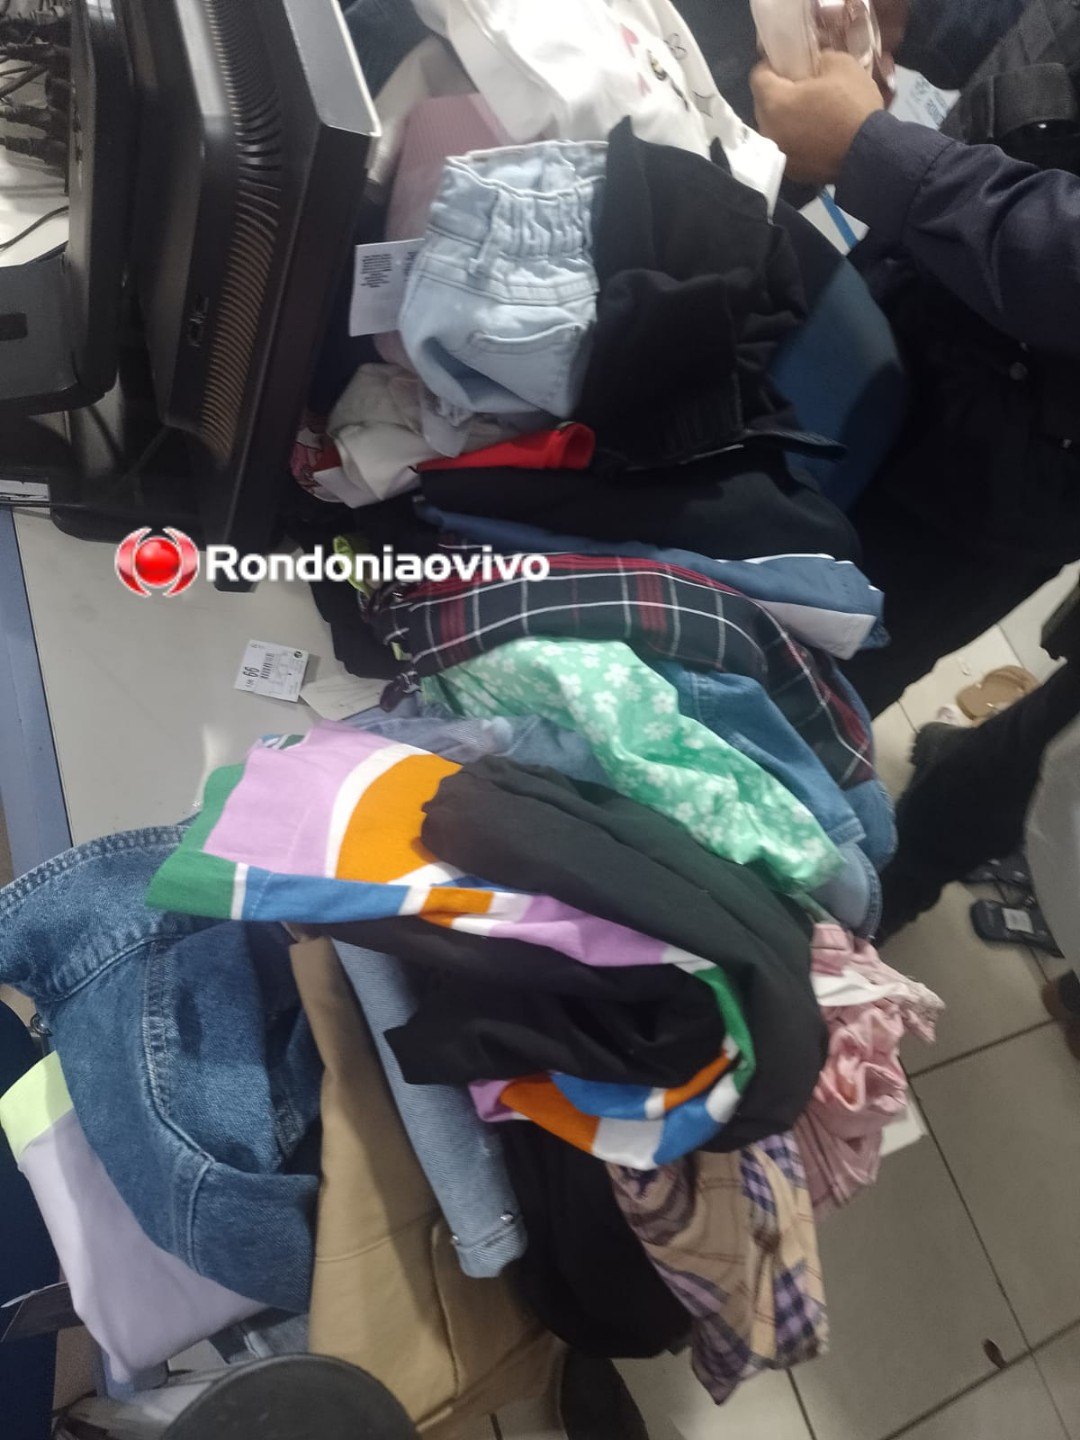 NA DELEGACIA: Mulheres tiram as roupas após furto em loja do shopping 